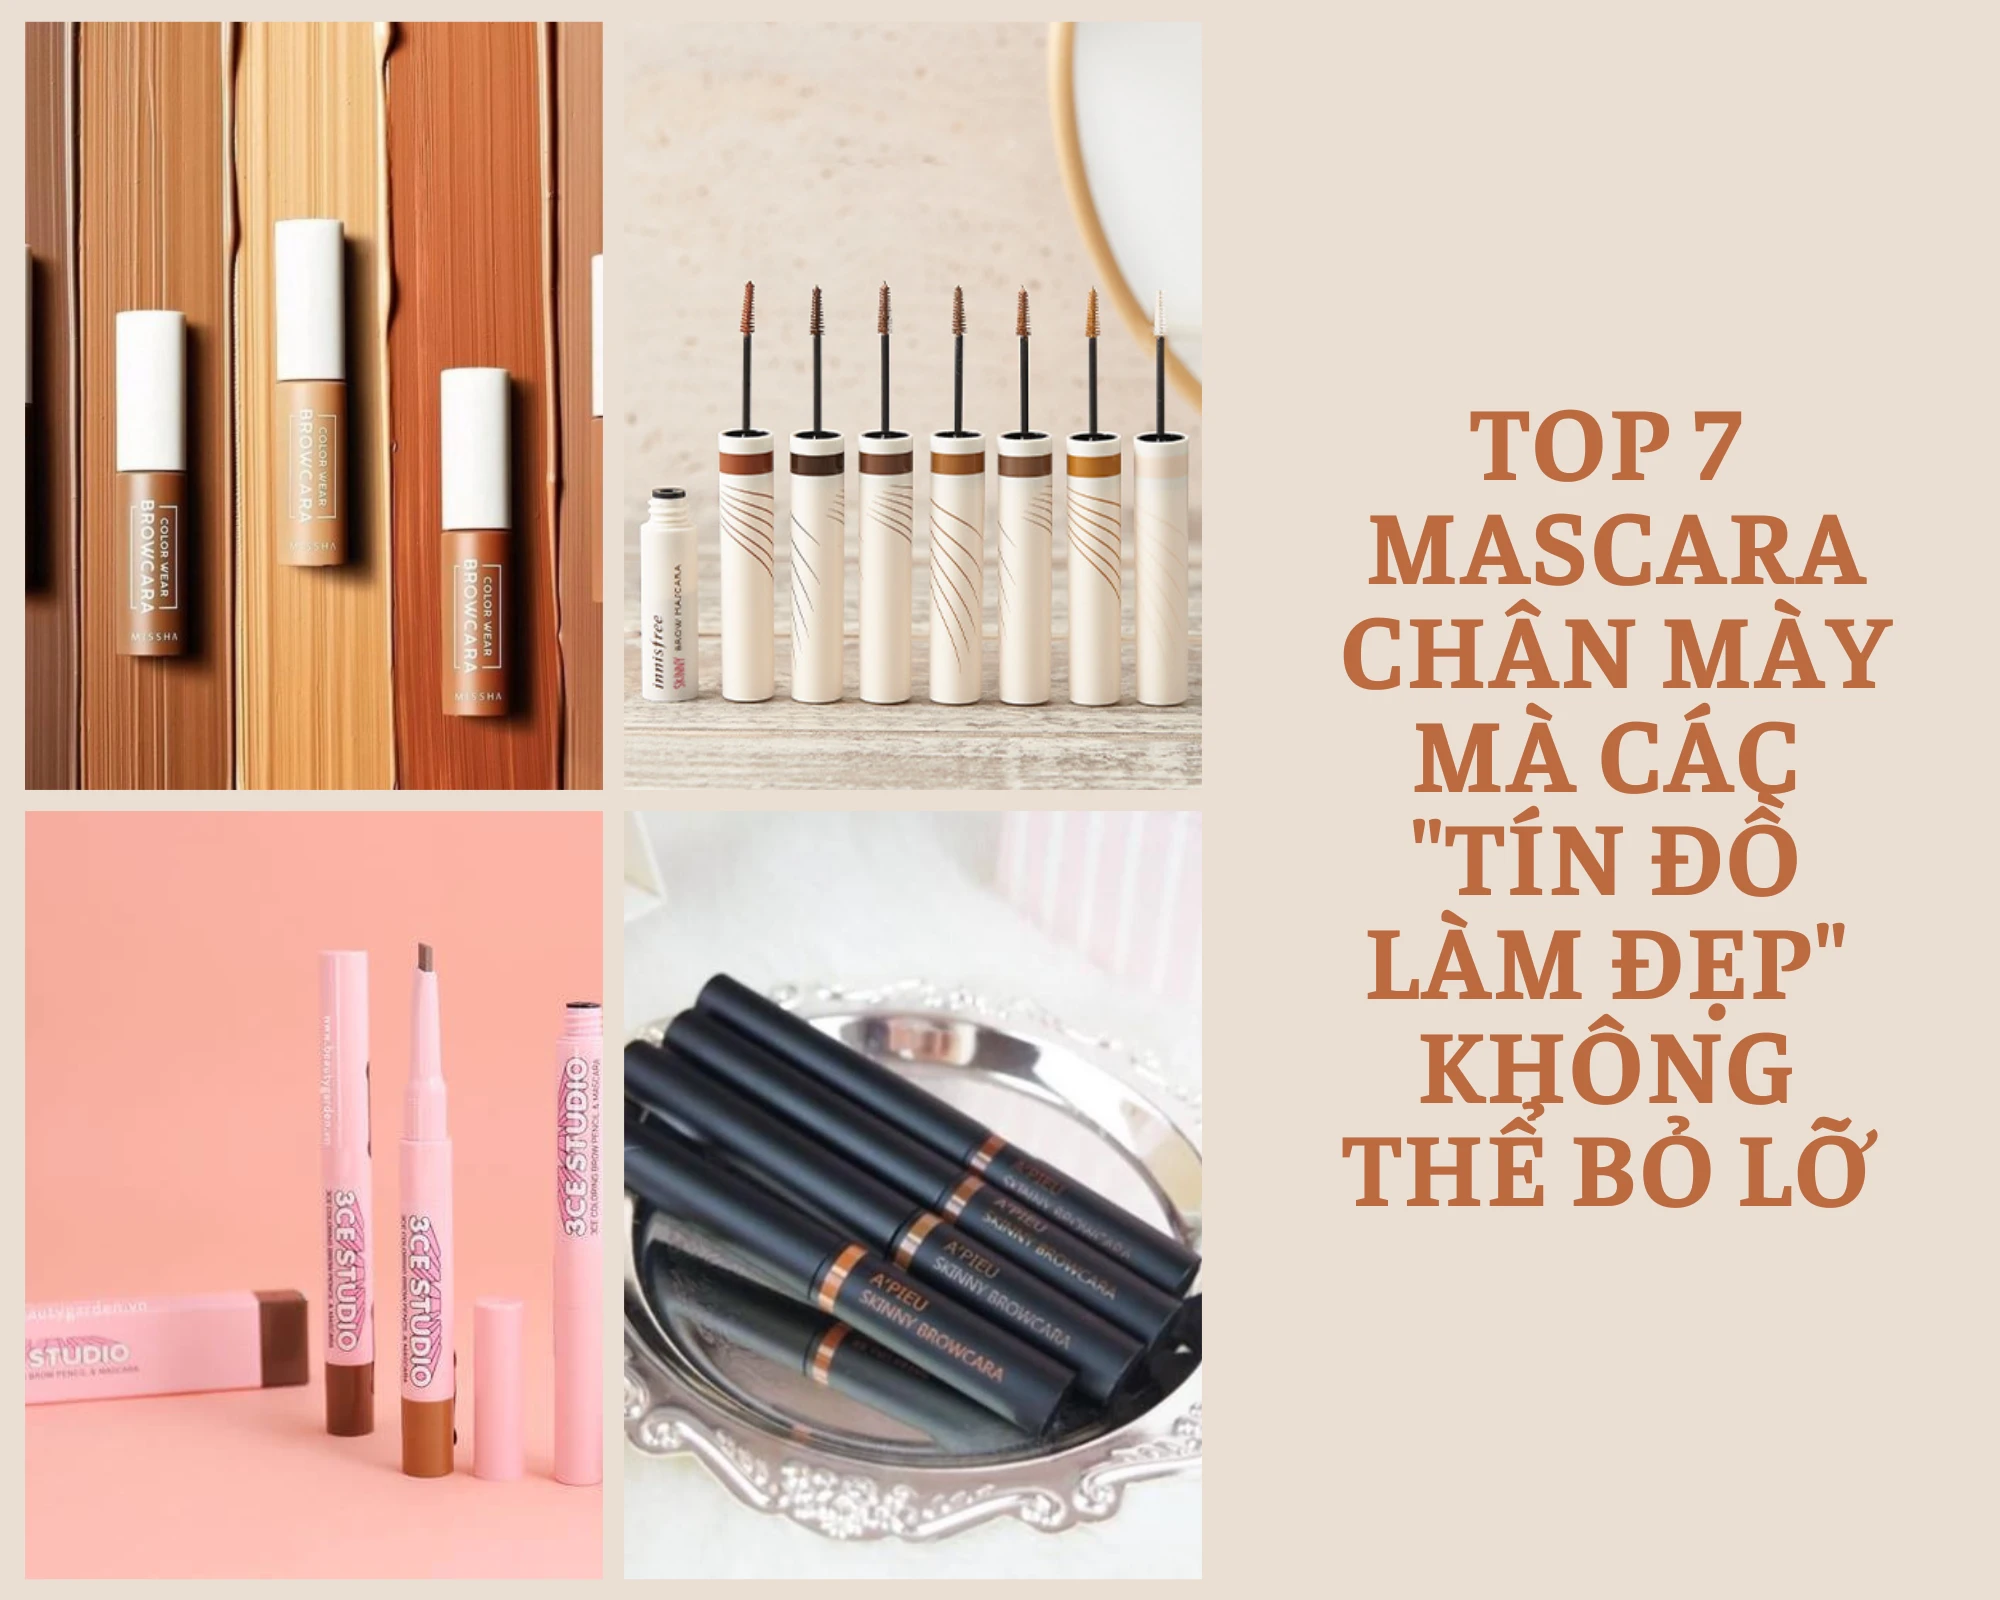 Top 7 mascara chân mày mà các "tín đồ làm đẹp" không thể bỏ lỡ